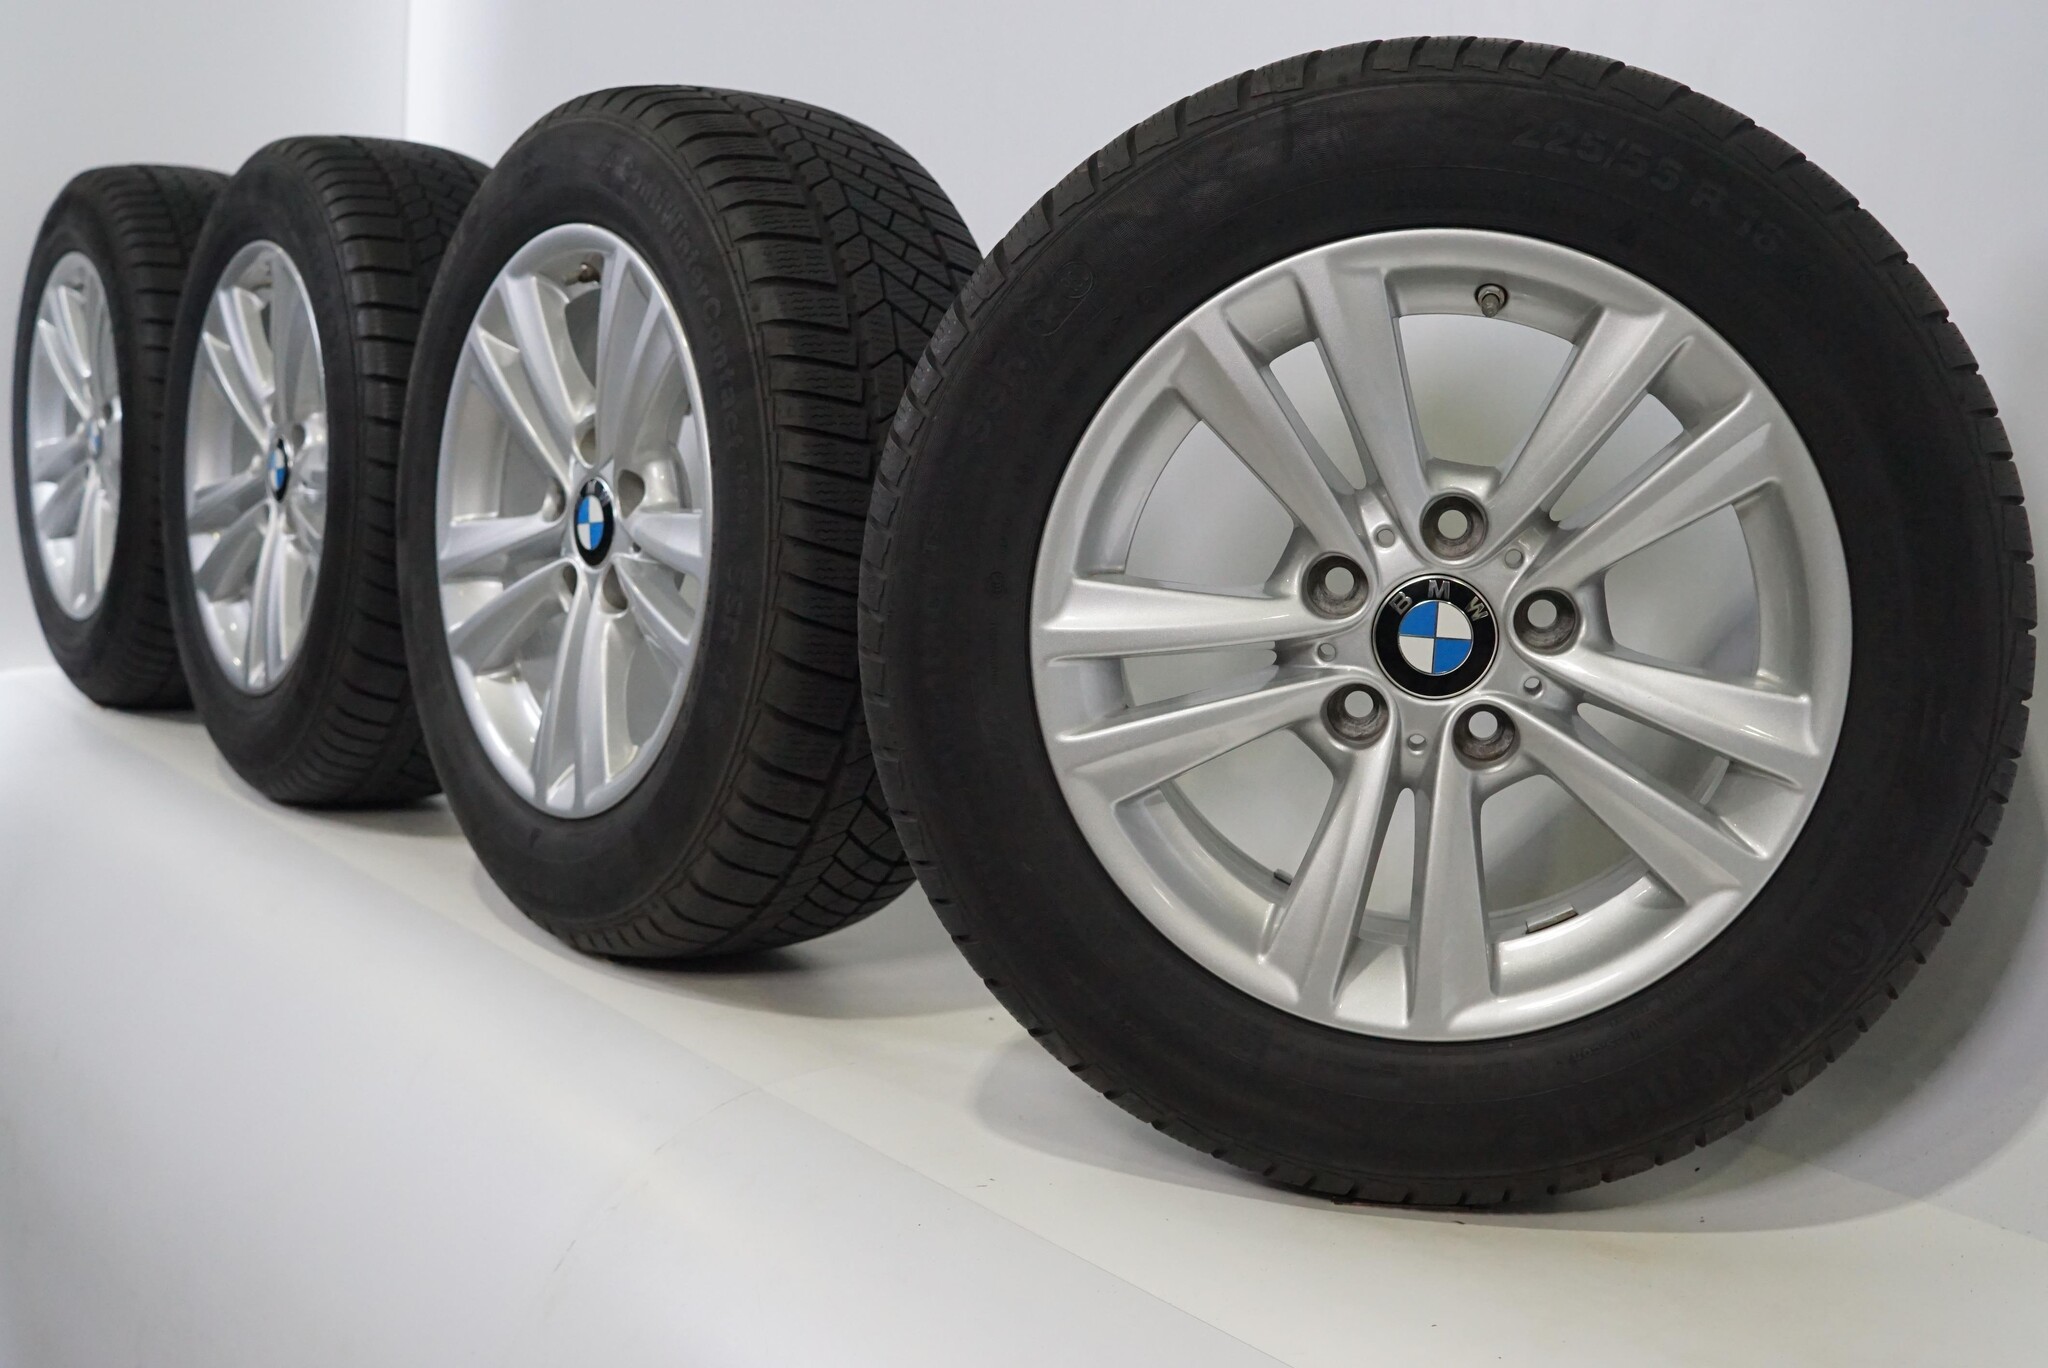 BMW 3 4 series F30 F31 F32 F36 656 16 inch Continental Winter tires Original